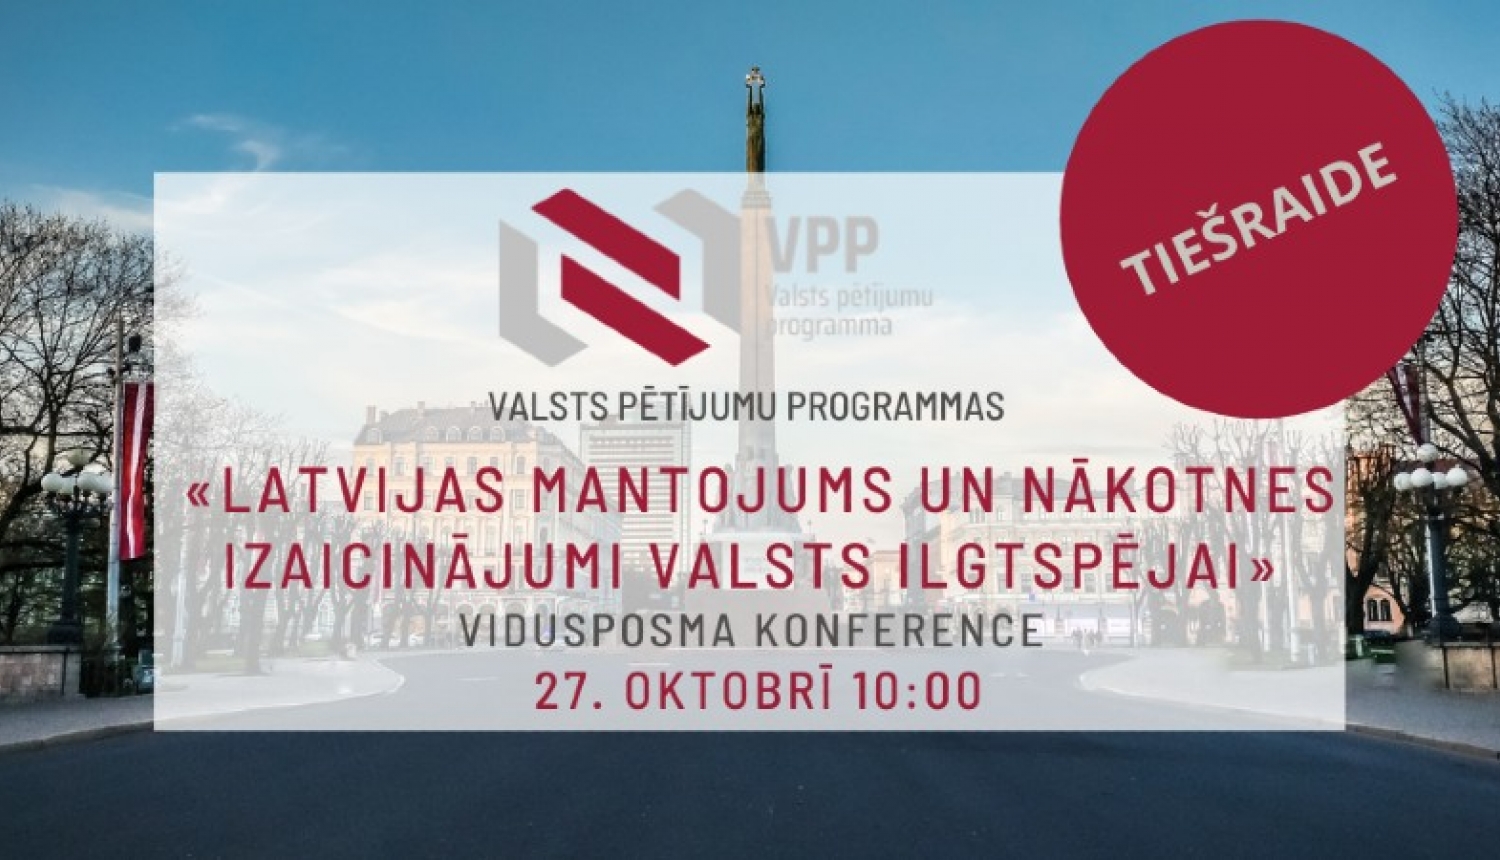 Tiešsaistes konference “Latvijas mantojums un nākotnes izaicinājumi valsts ilgtspējai” 27. oktobrī